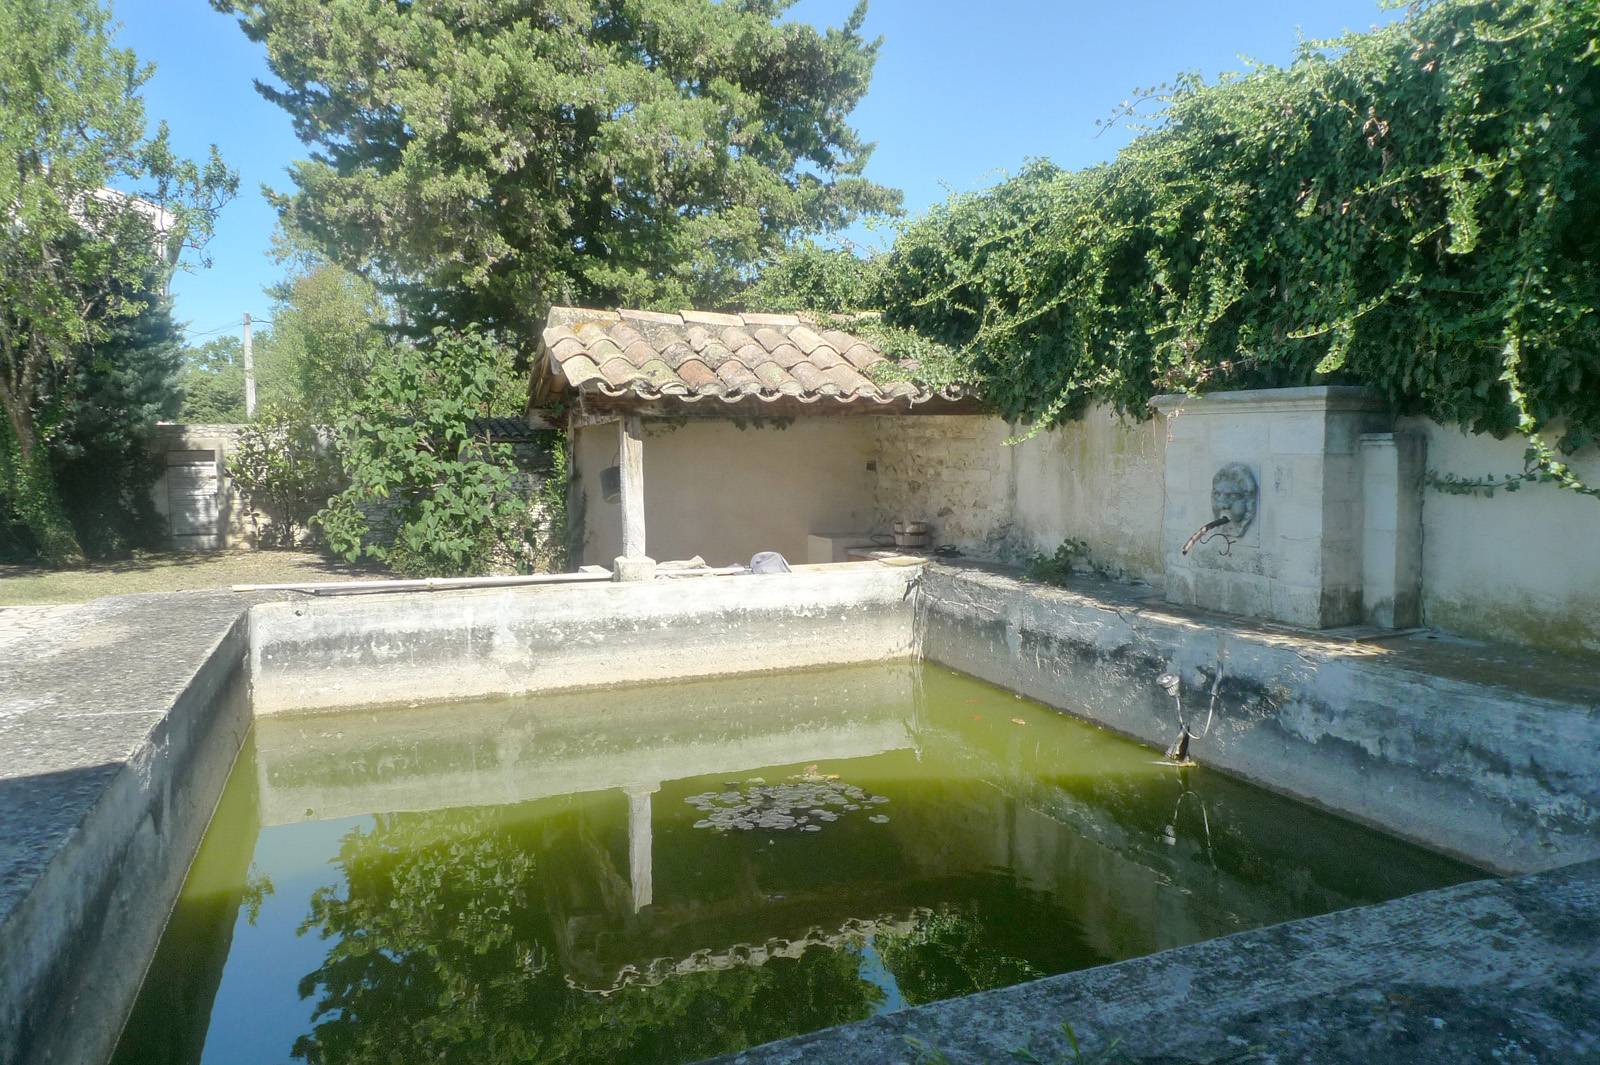 A vendre villa avec jardin Drôme Provençale 5 chambres A vendre villa avec jardin Drôme Provençale Entre St Paul 3 Chtx et Grignan 5 chambres